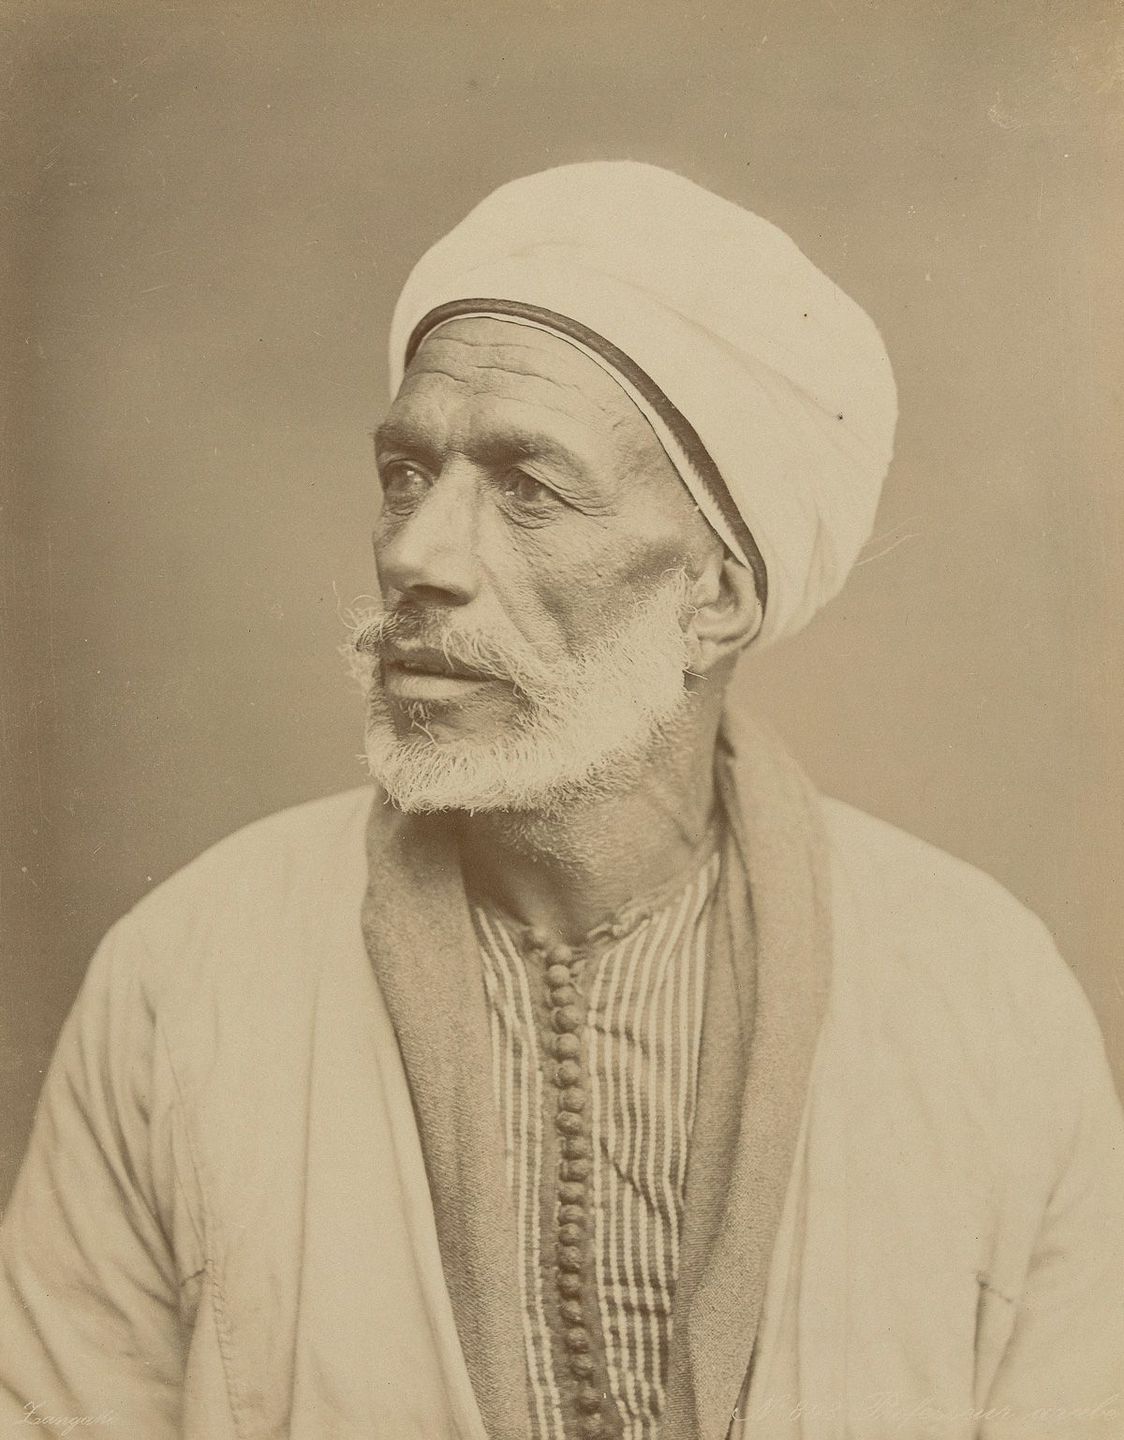 Arabic professor, Cairo.